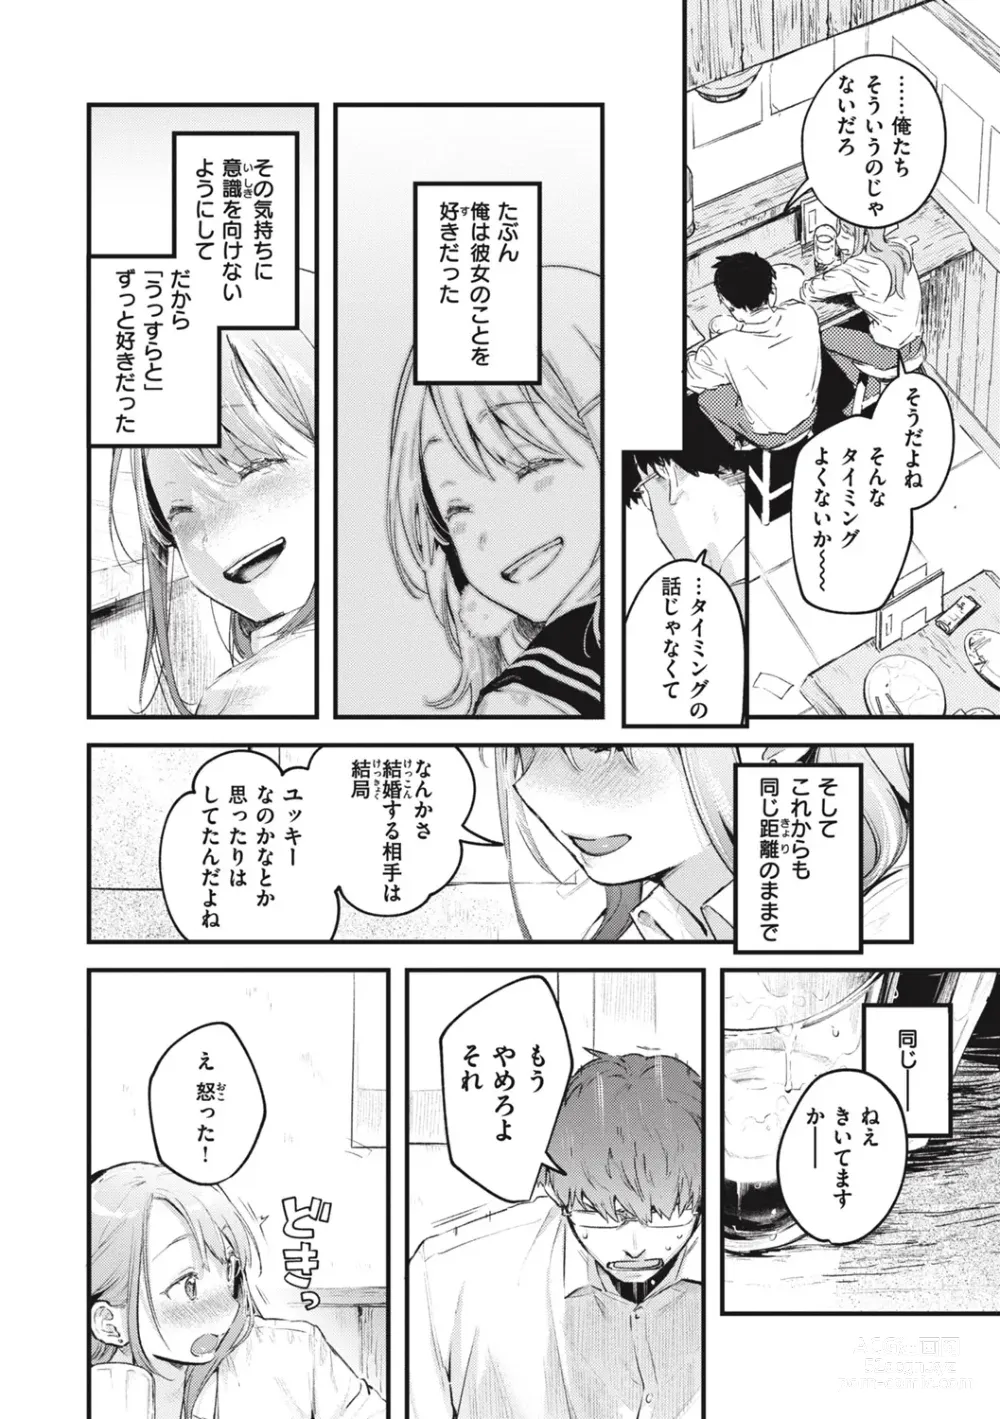 Page 192 of manga Koi no Mukidashi